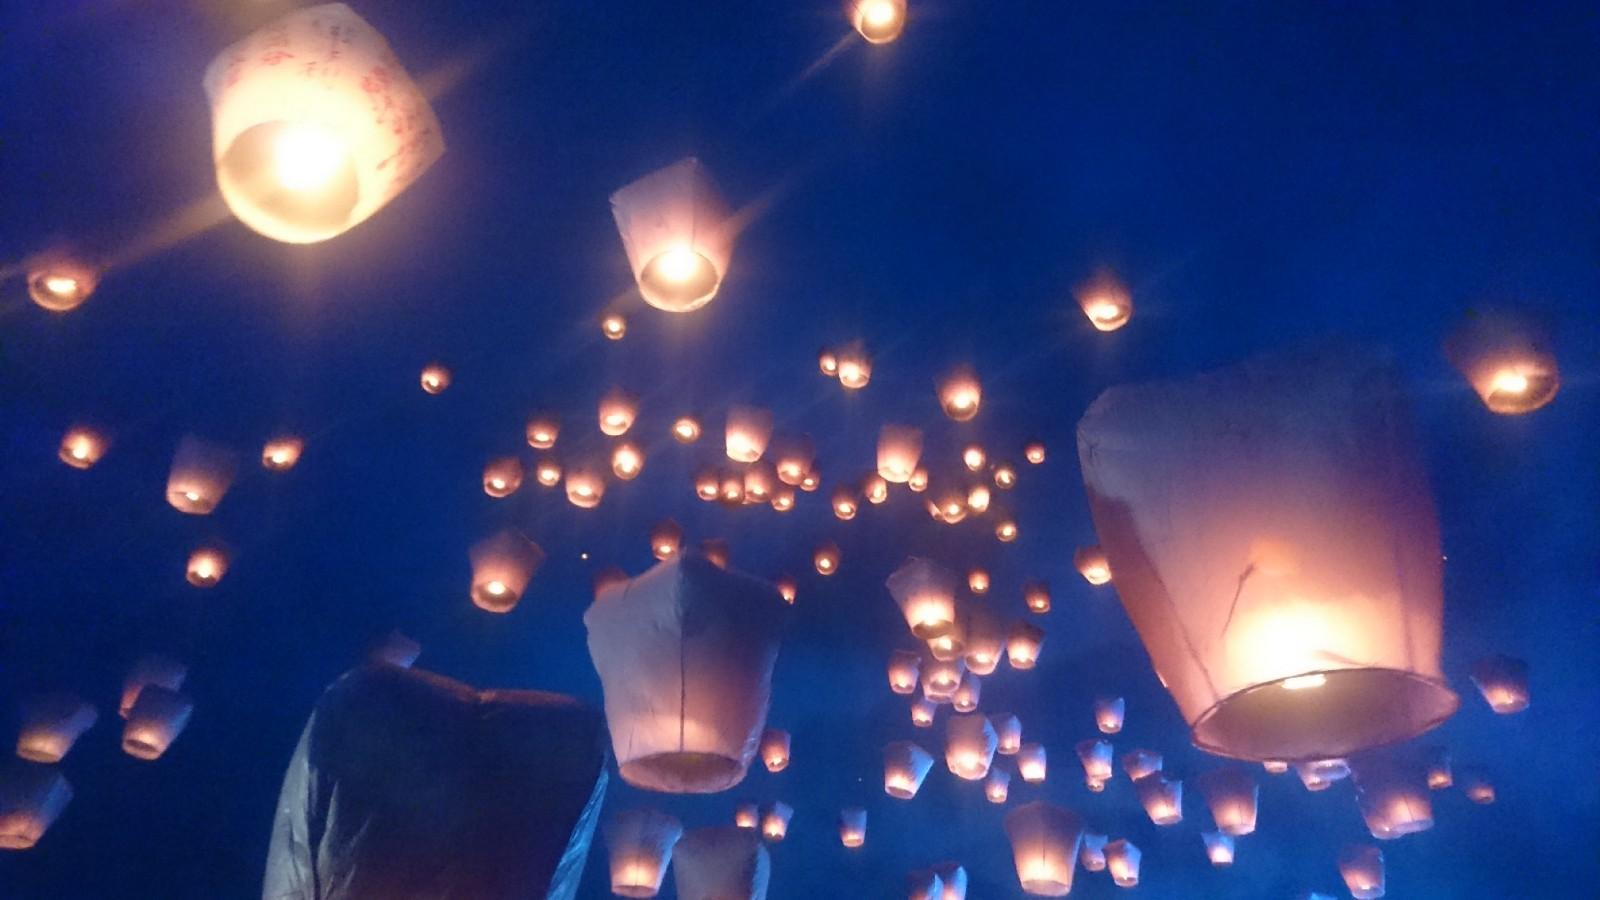 Pingxi》Sky Lantern Festival 2018